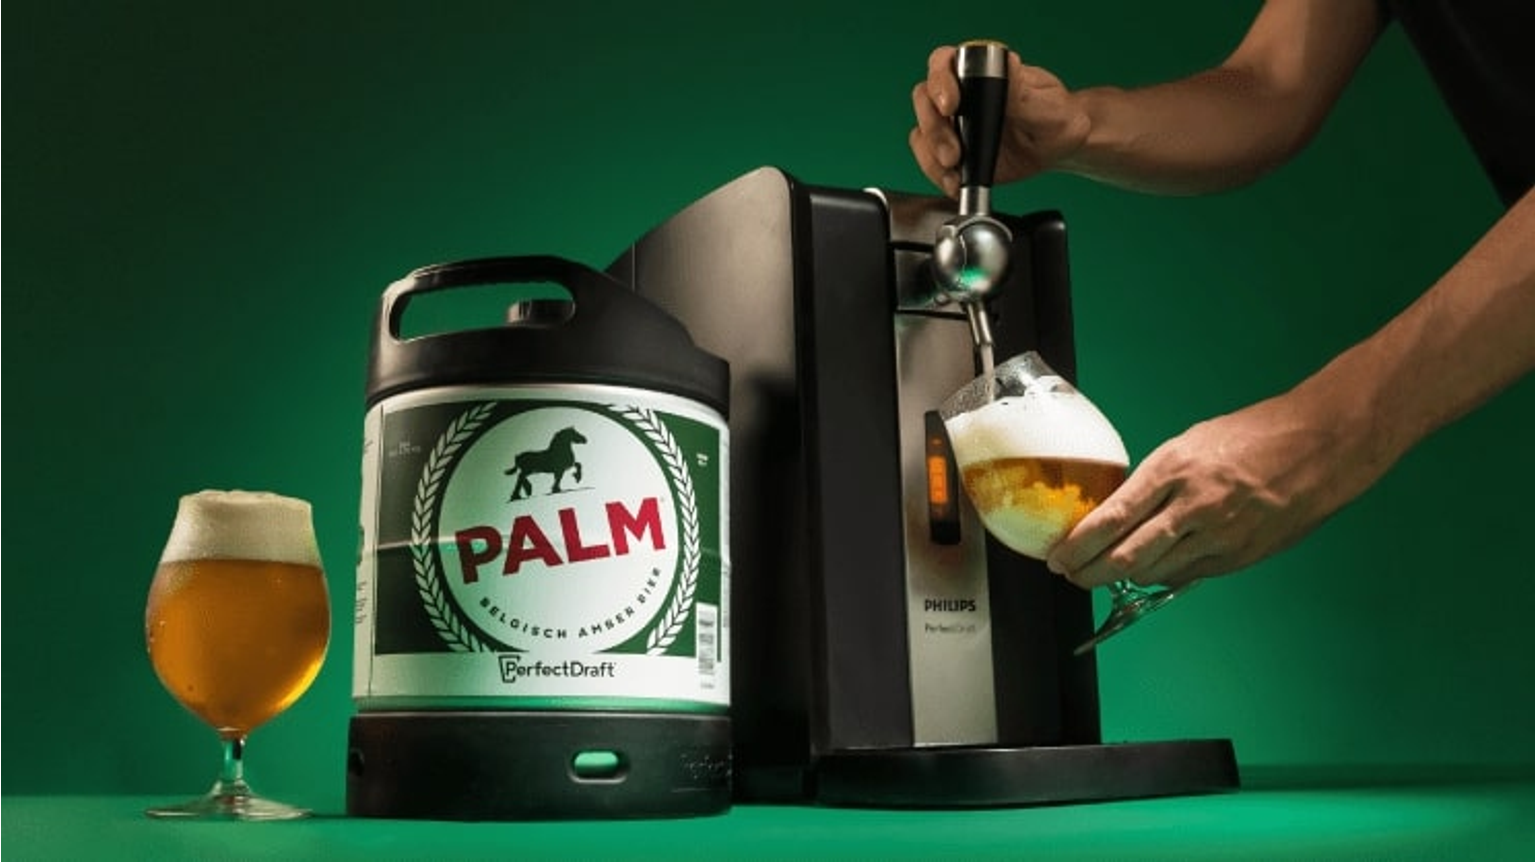 thumbnail for blog article named: Palm, un fût de bière spécial arrive dans la sélection PerfectDraft